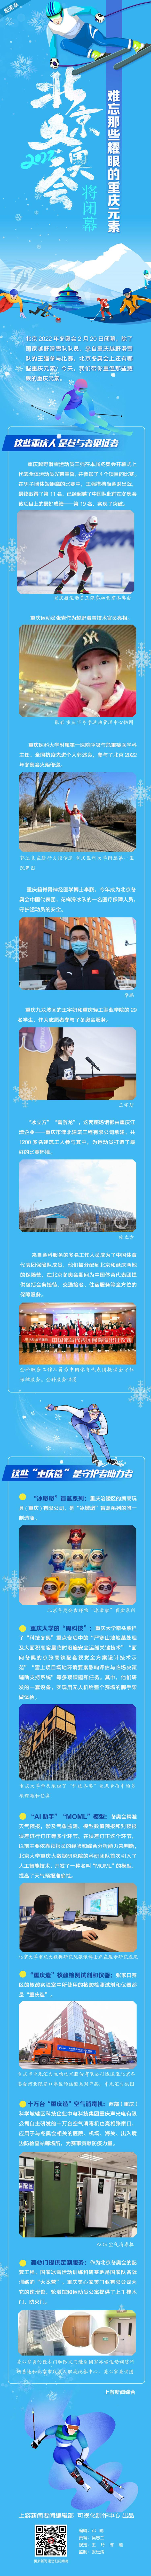 图鉴录丨北京冬奥会将闭幕 难忘那些耀眼的重庆元素